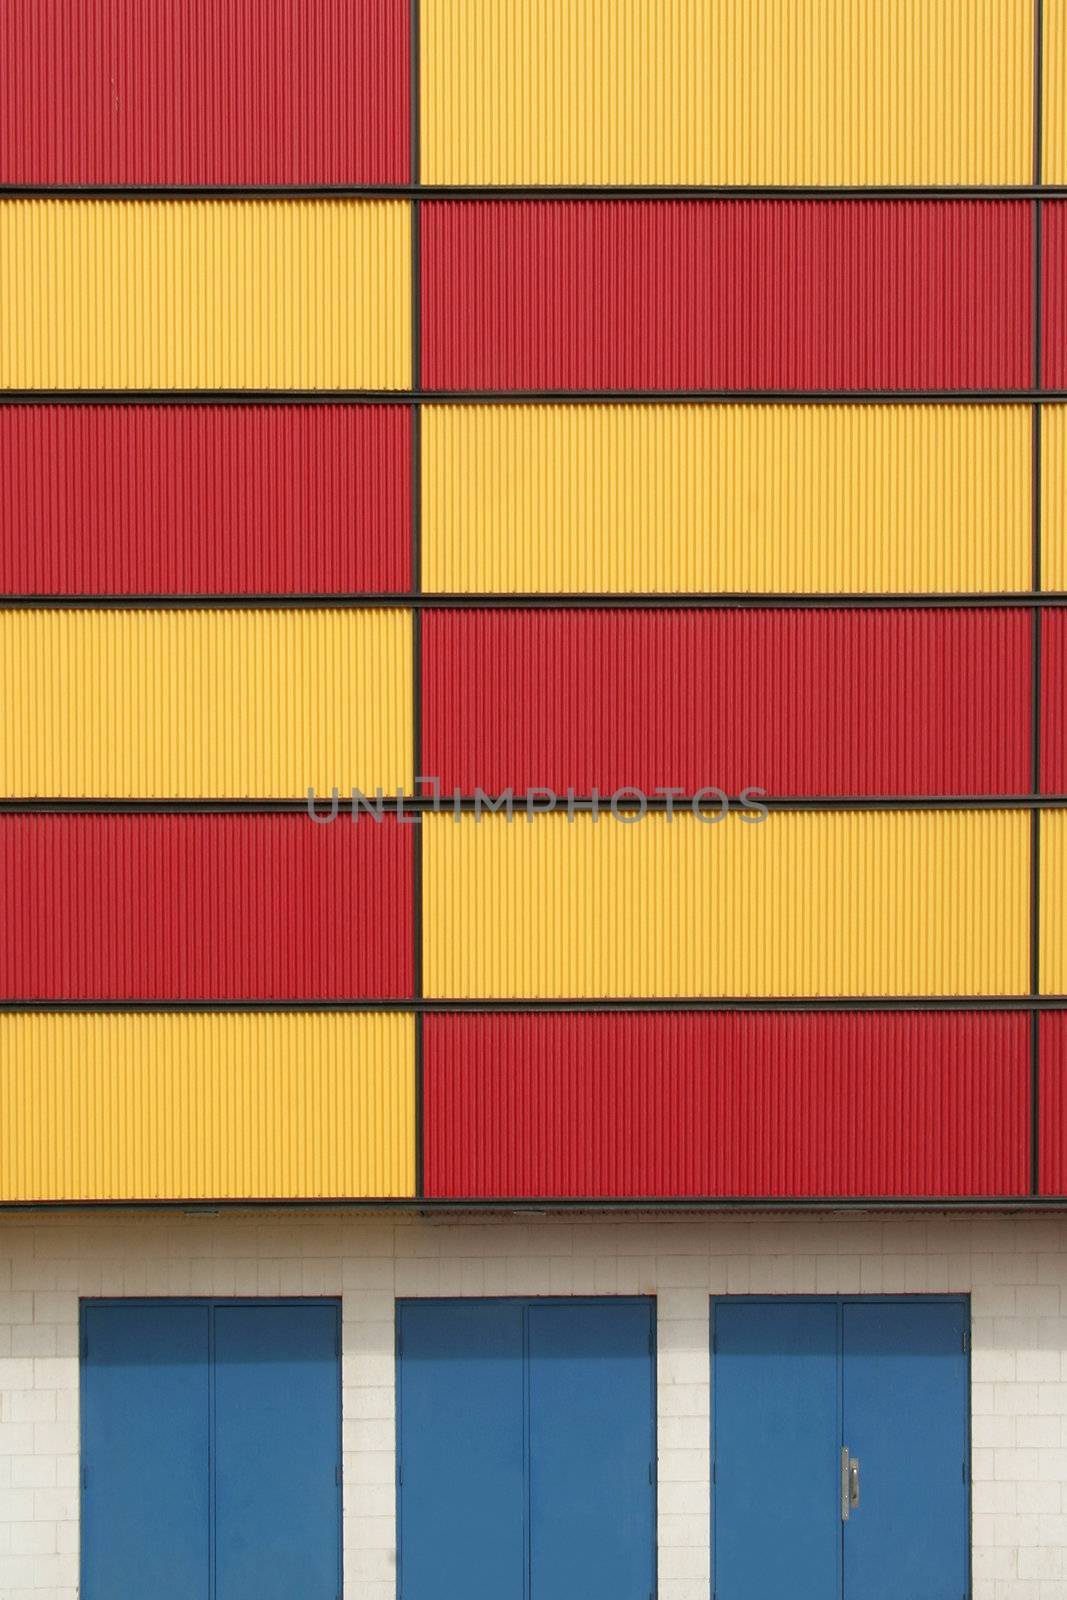 Colourful facade on a building